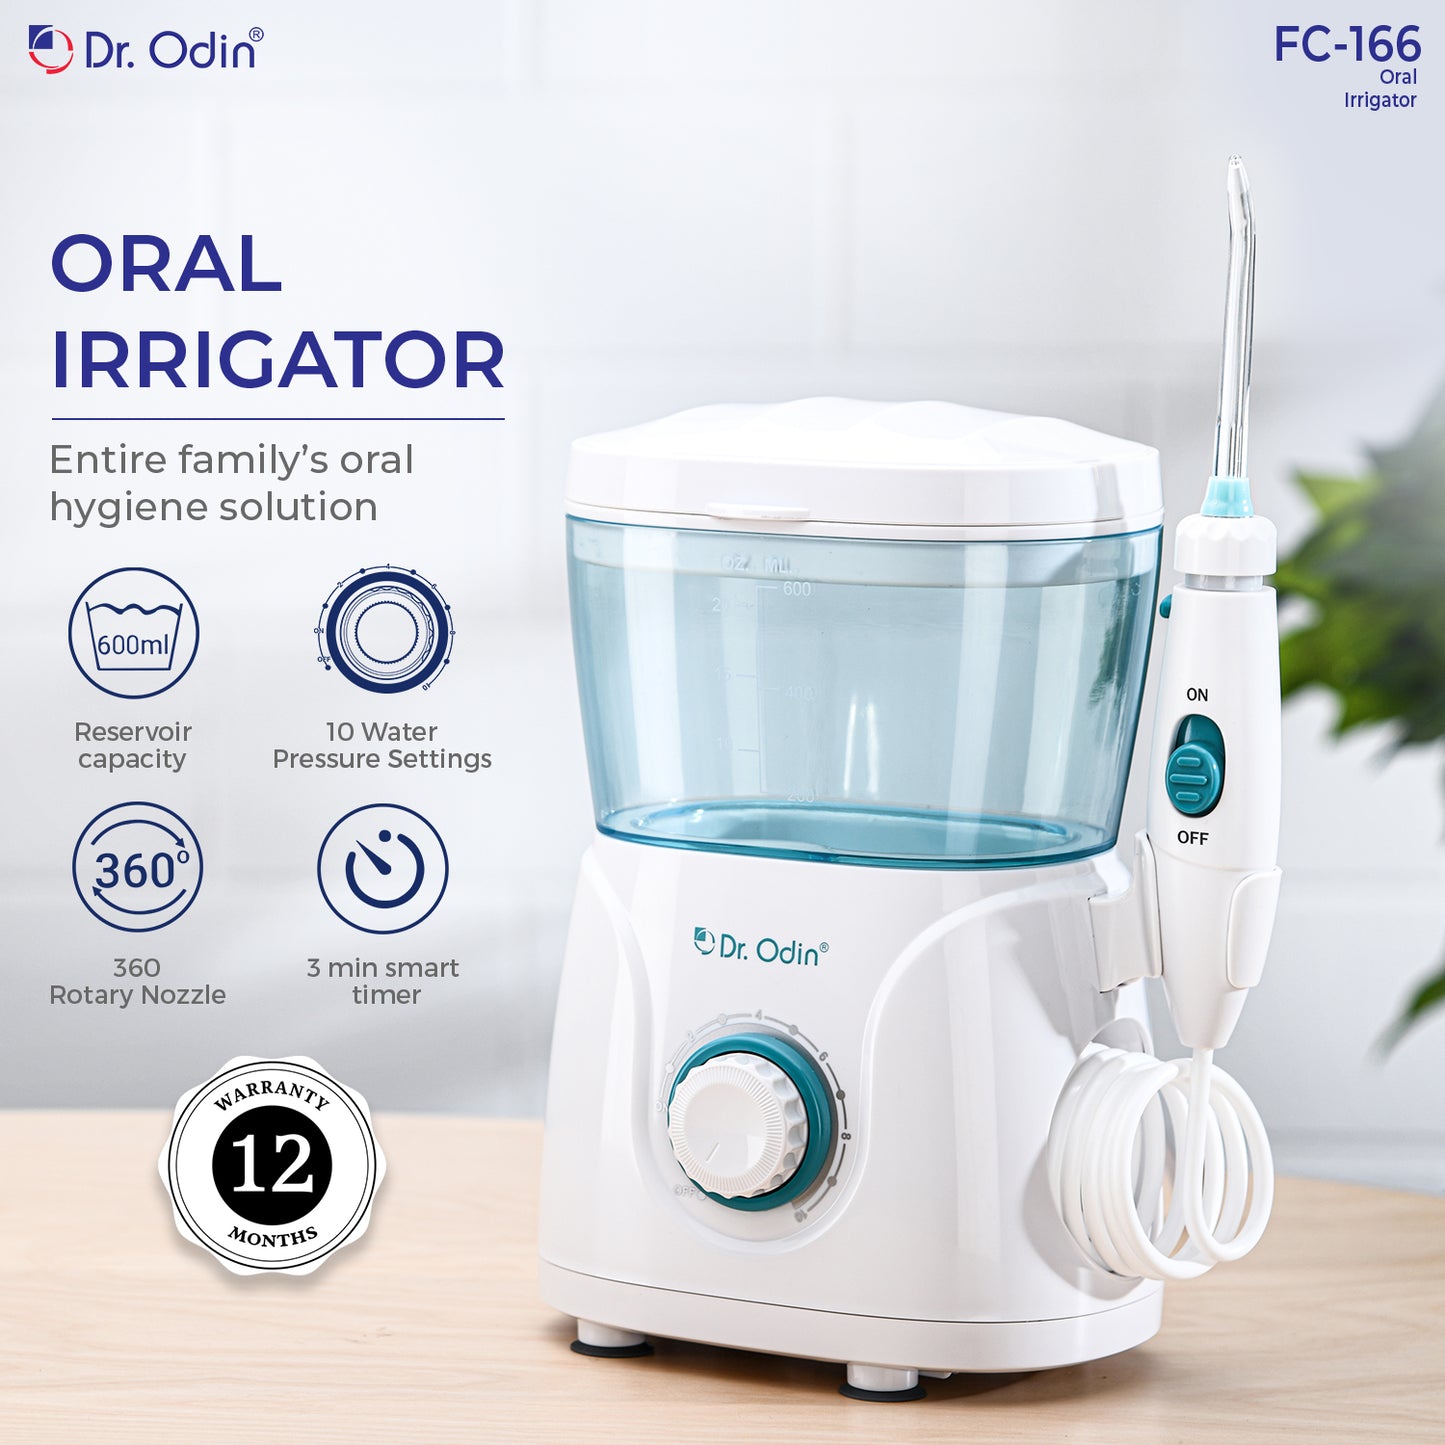 Oral Irrigator FC-166